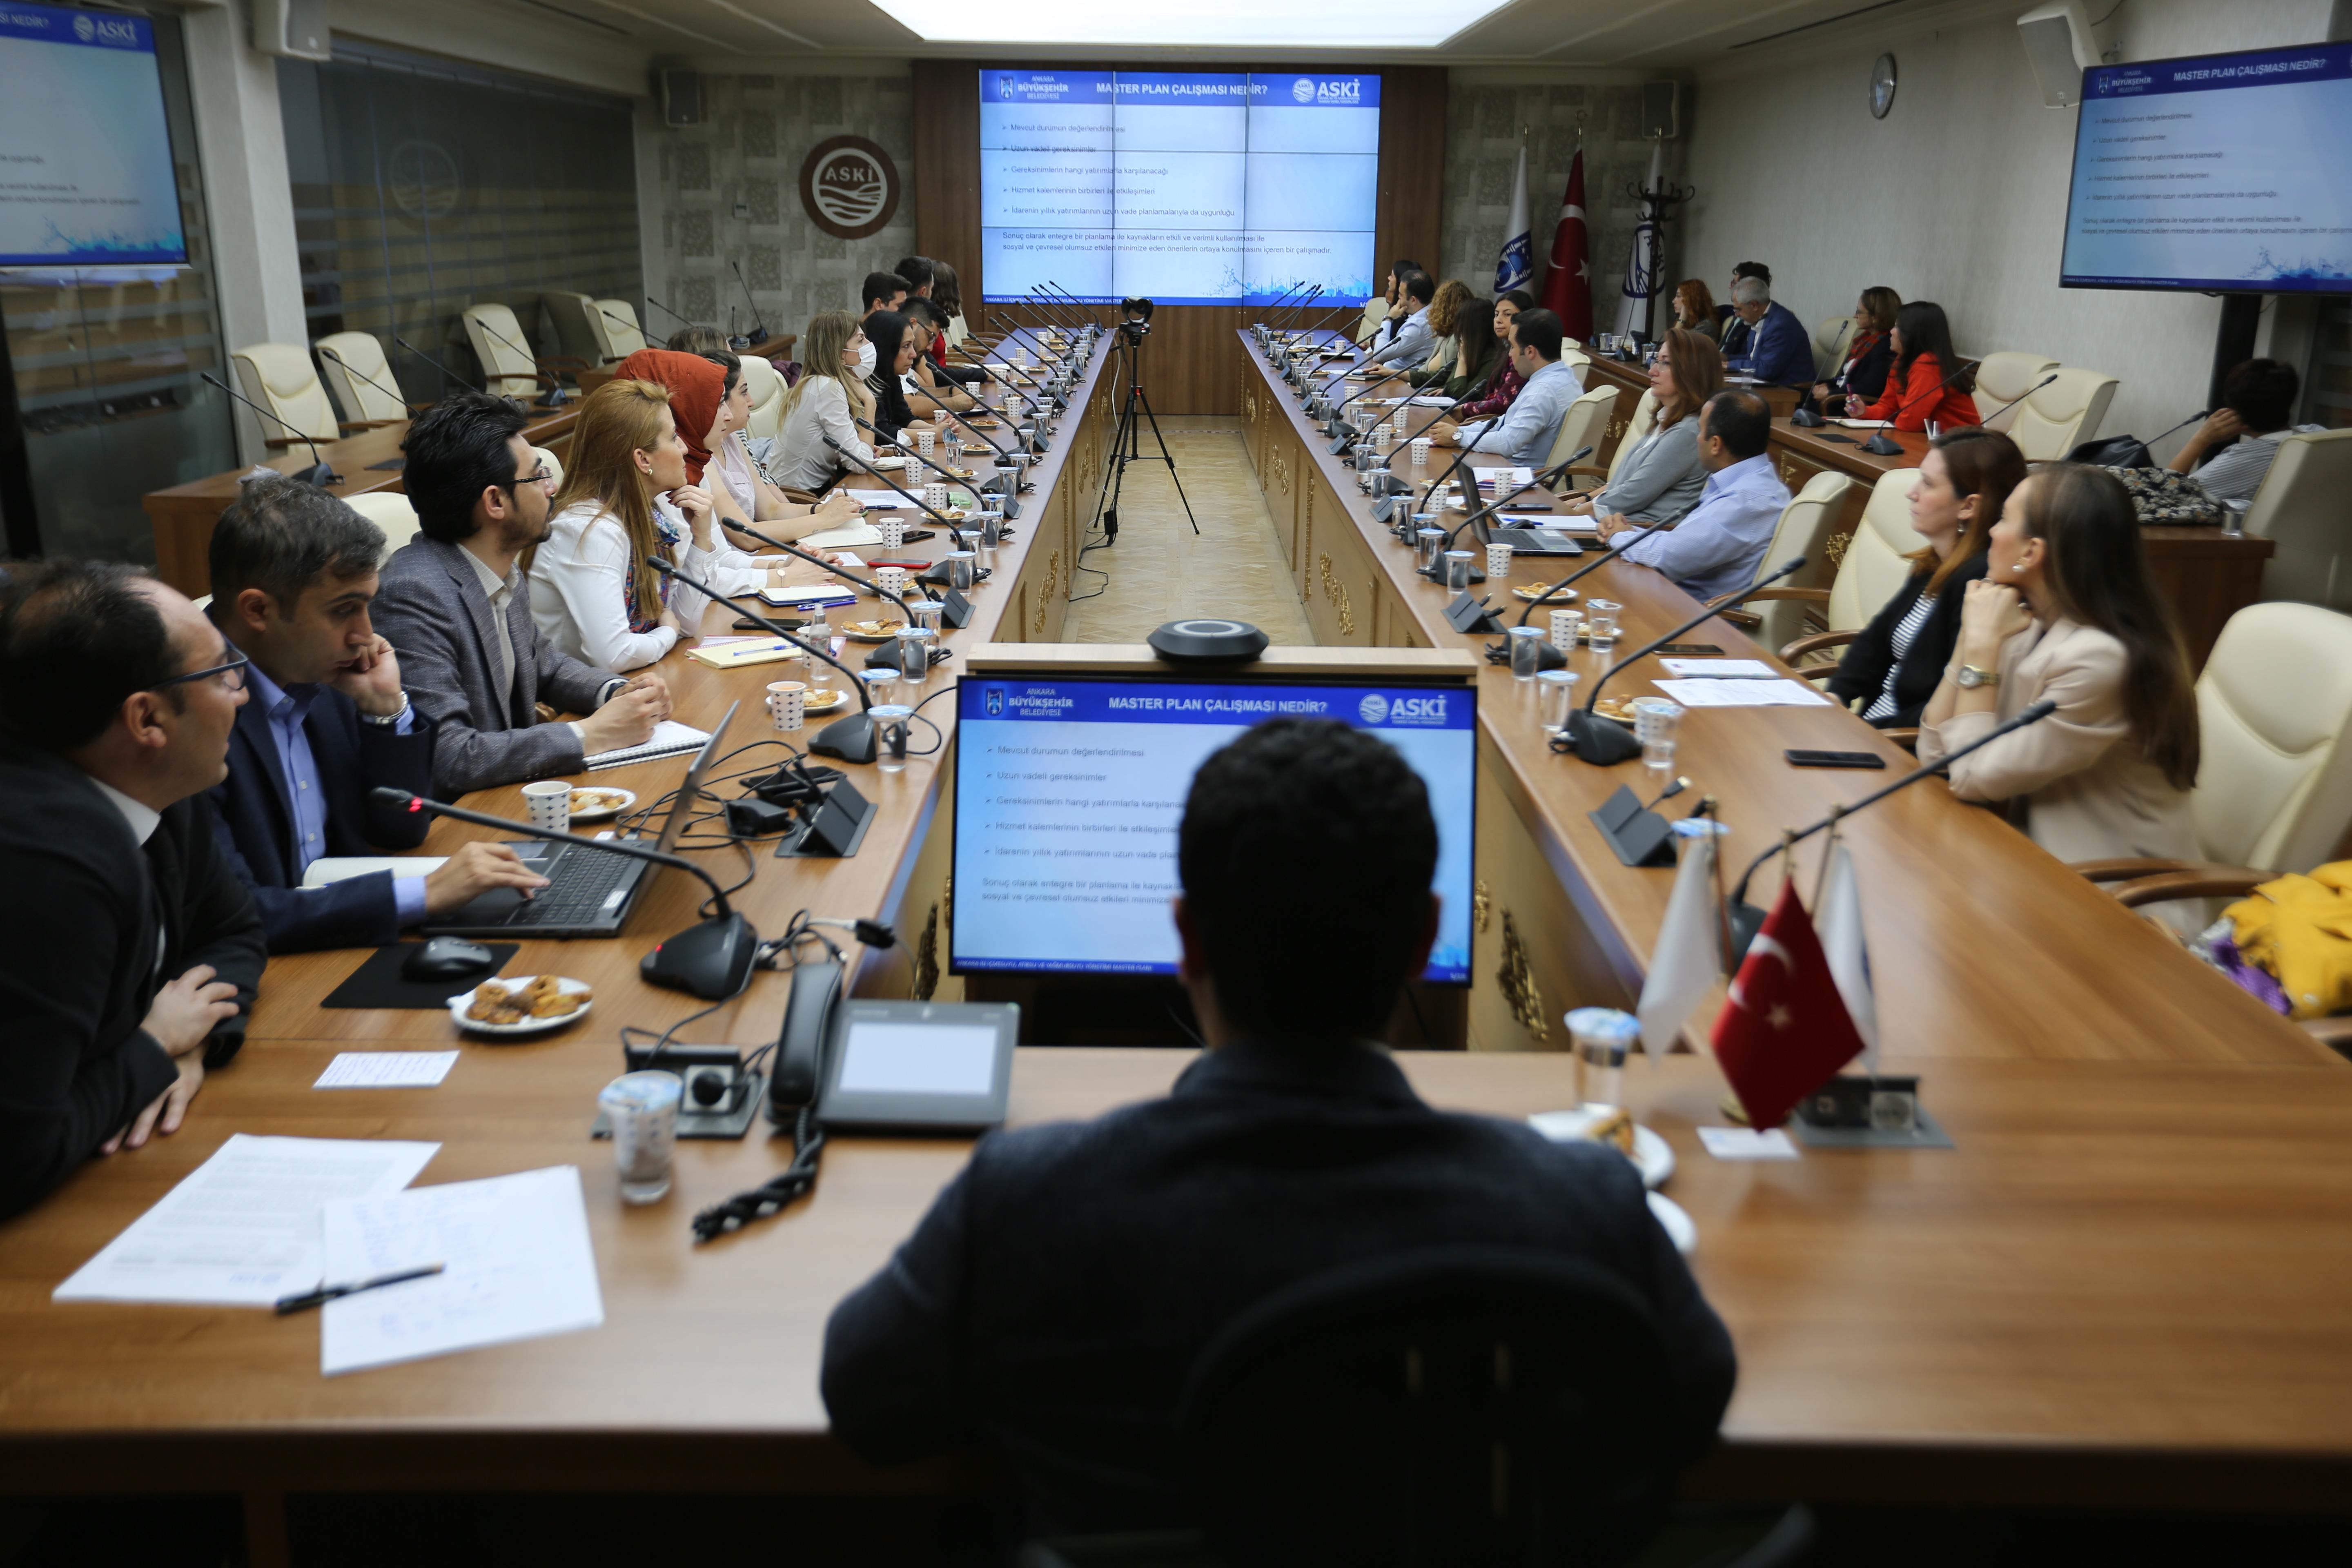 Ankara İli İçmesuyu, Atıksu ve Yağmursuyu Yönetimi Master Planı, Stratejik Çevresel Değerlendirme Kapsam Belirleme Toplantısı yapıldı.